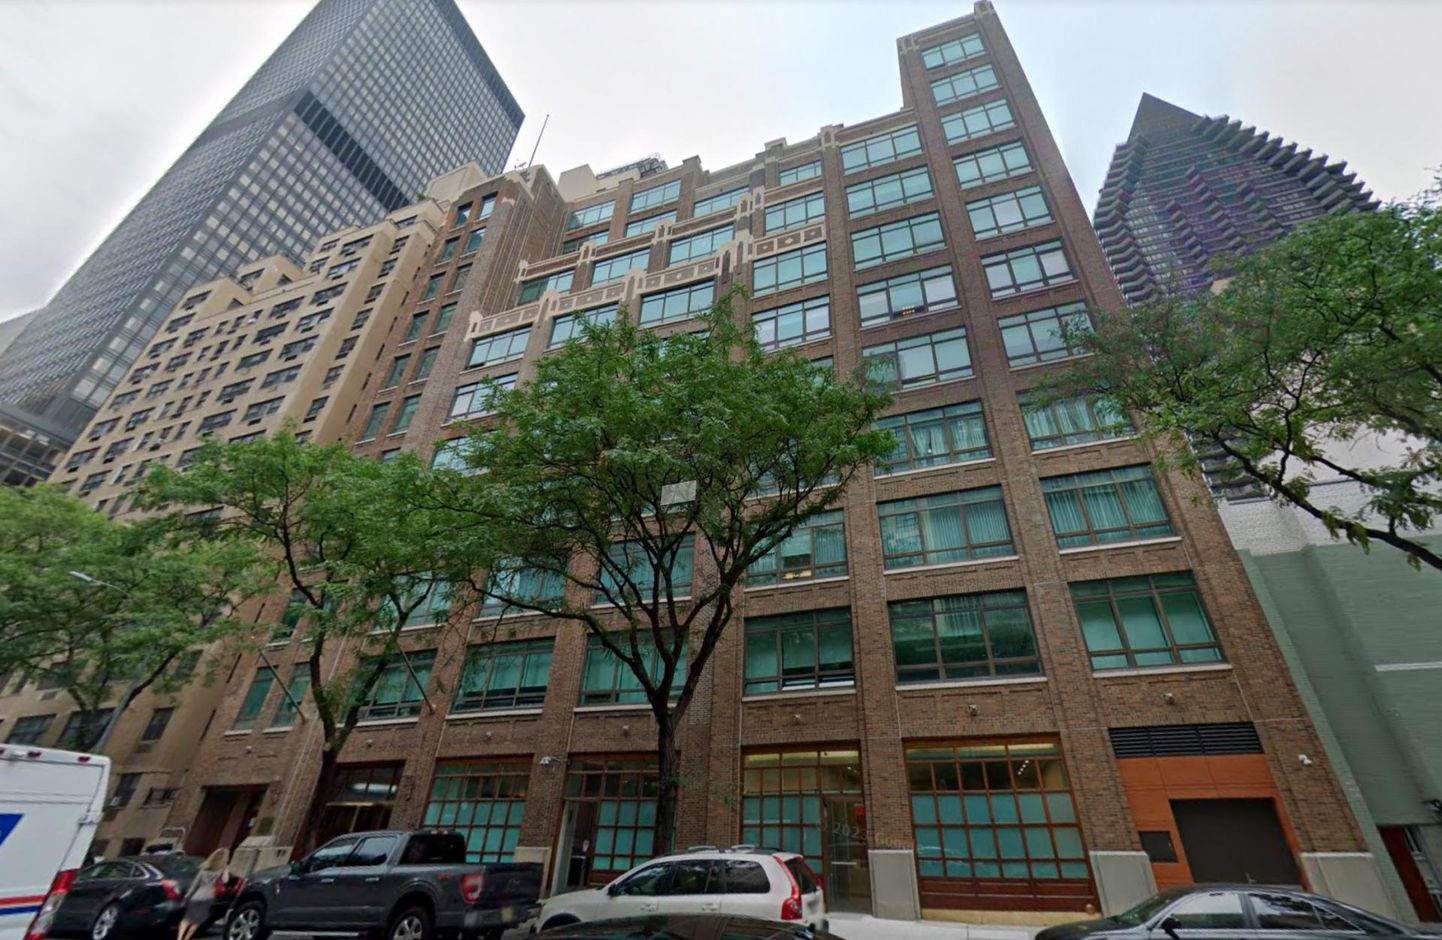 Генеральное консульство Эстонии в Нью-Йорке работает в здании, расположенном в нескольких сотнях метров от главного здания ООН.